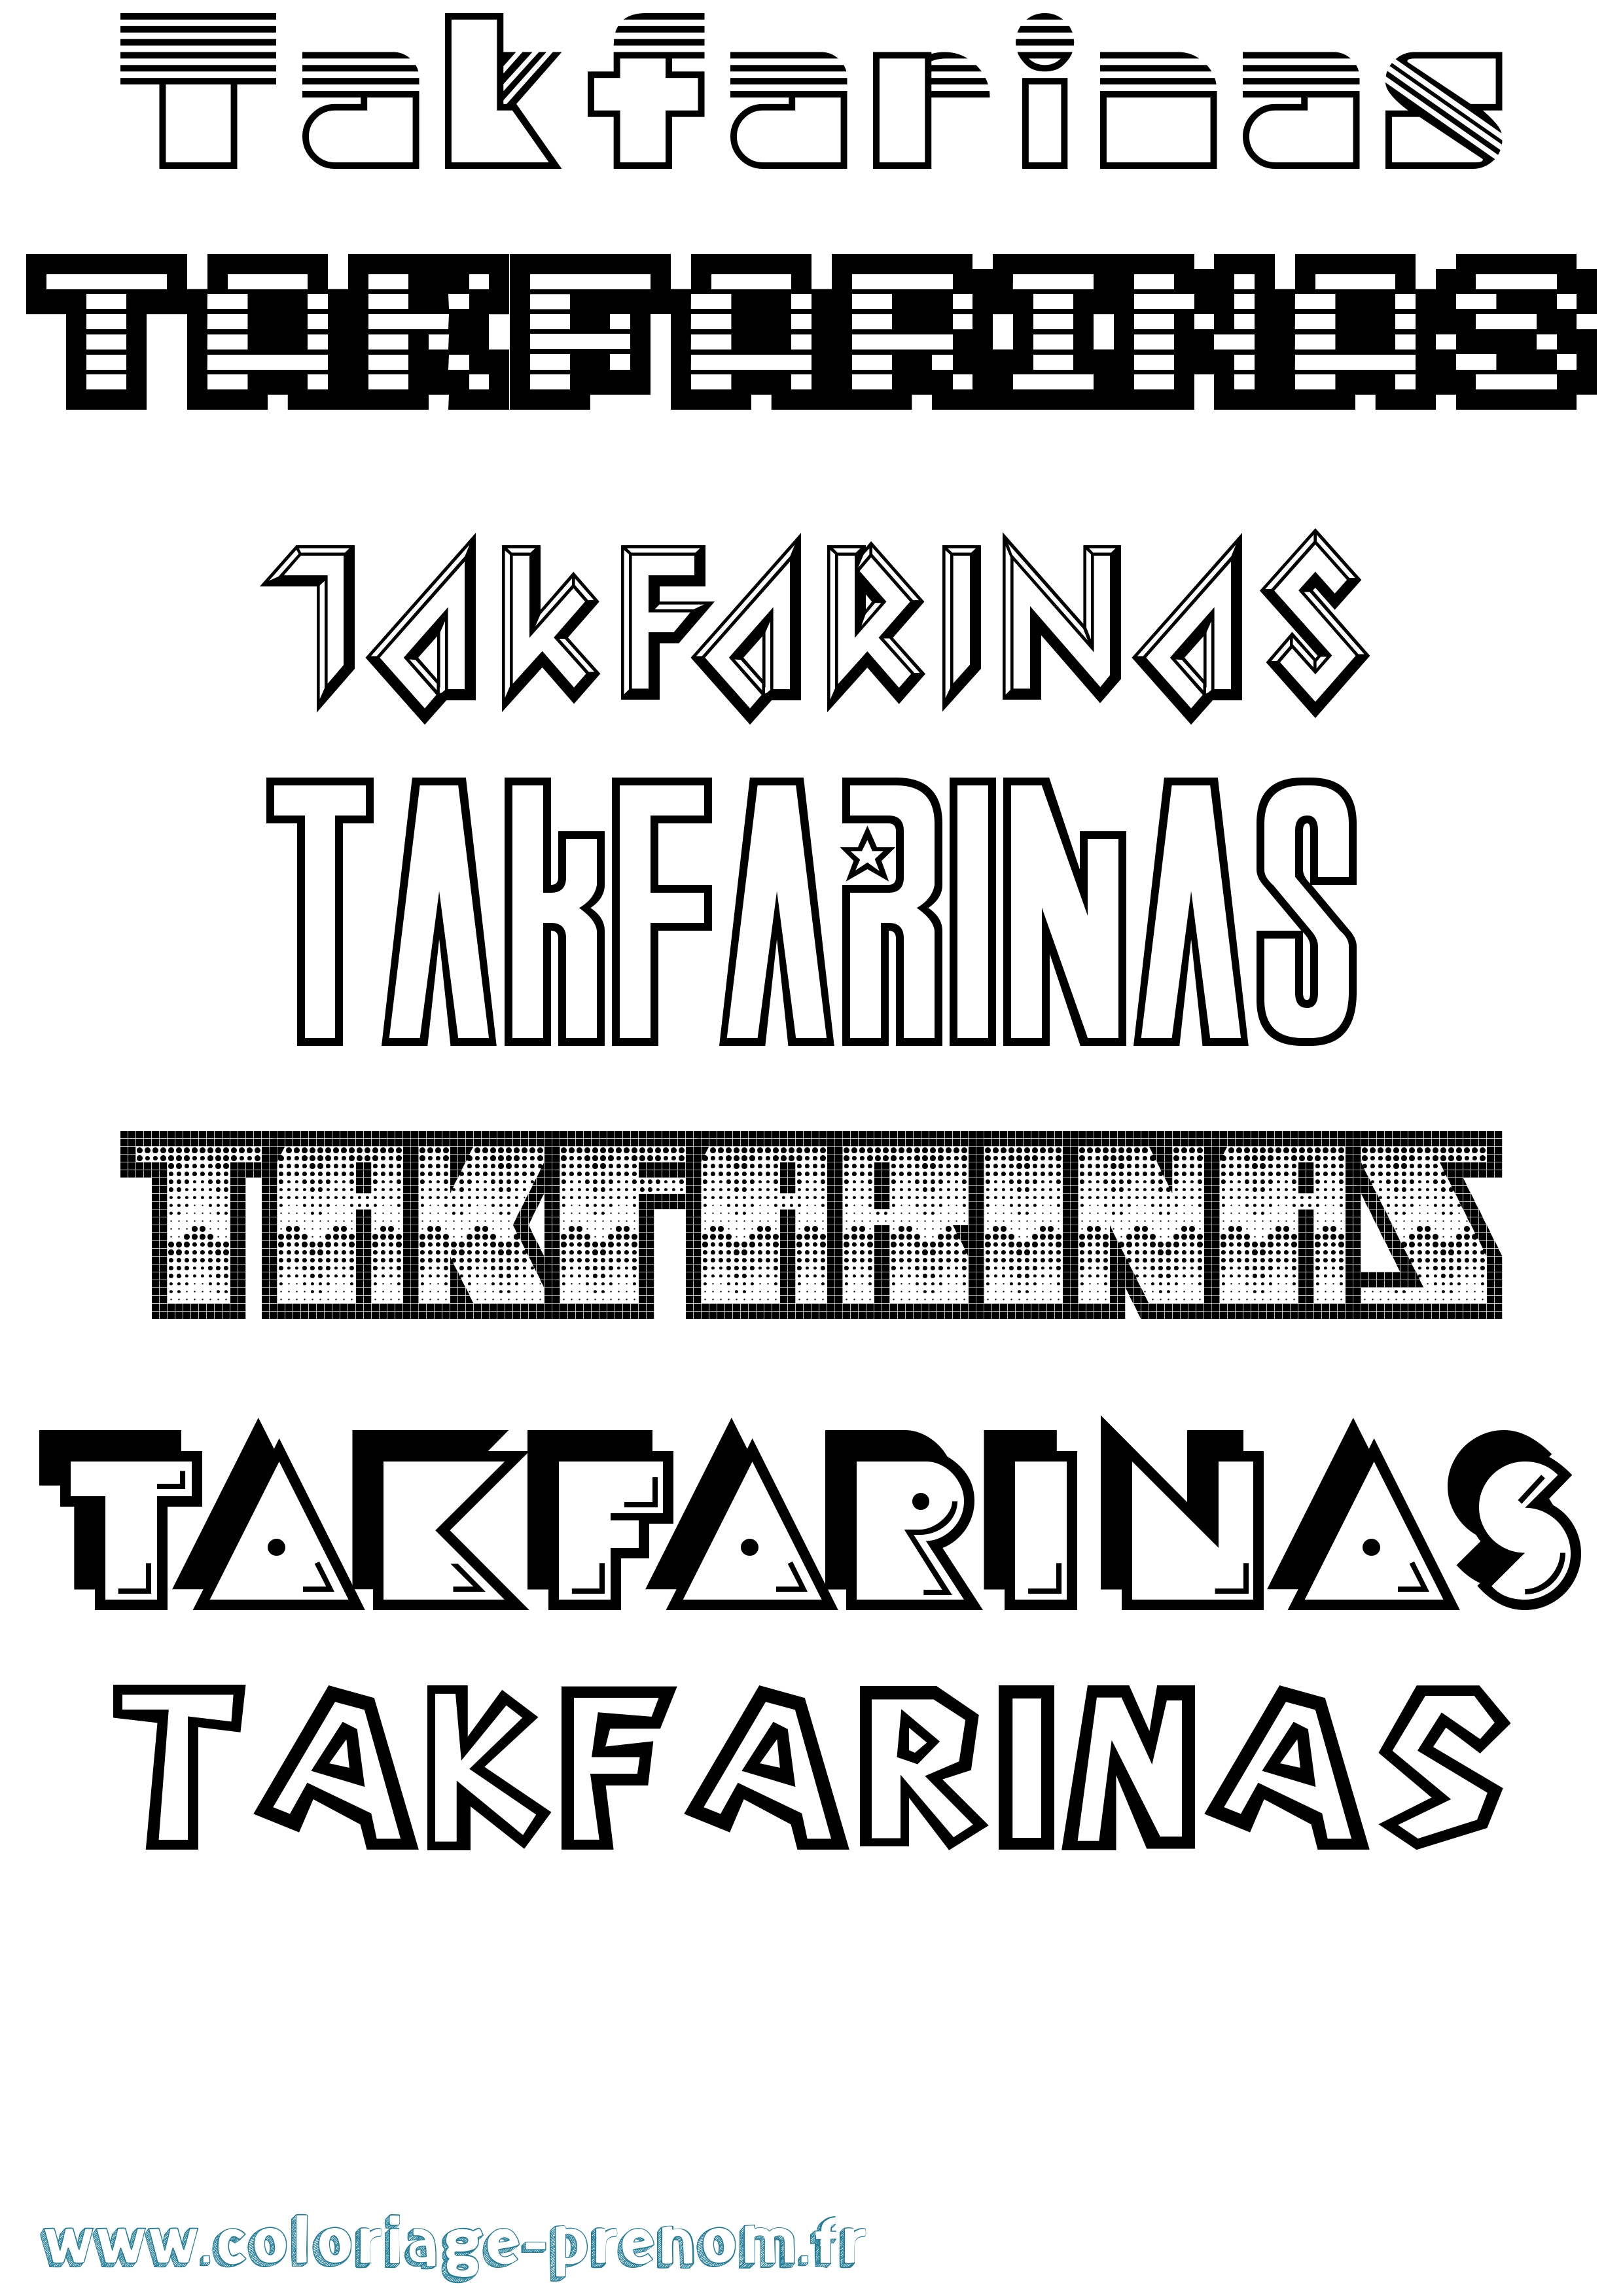 Coloriage prénom Takfarinas Jeux Vidéos